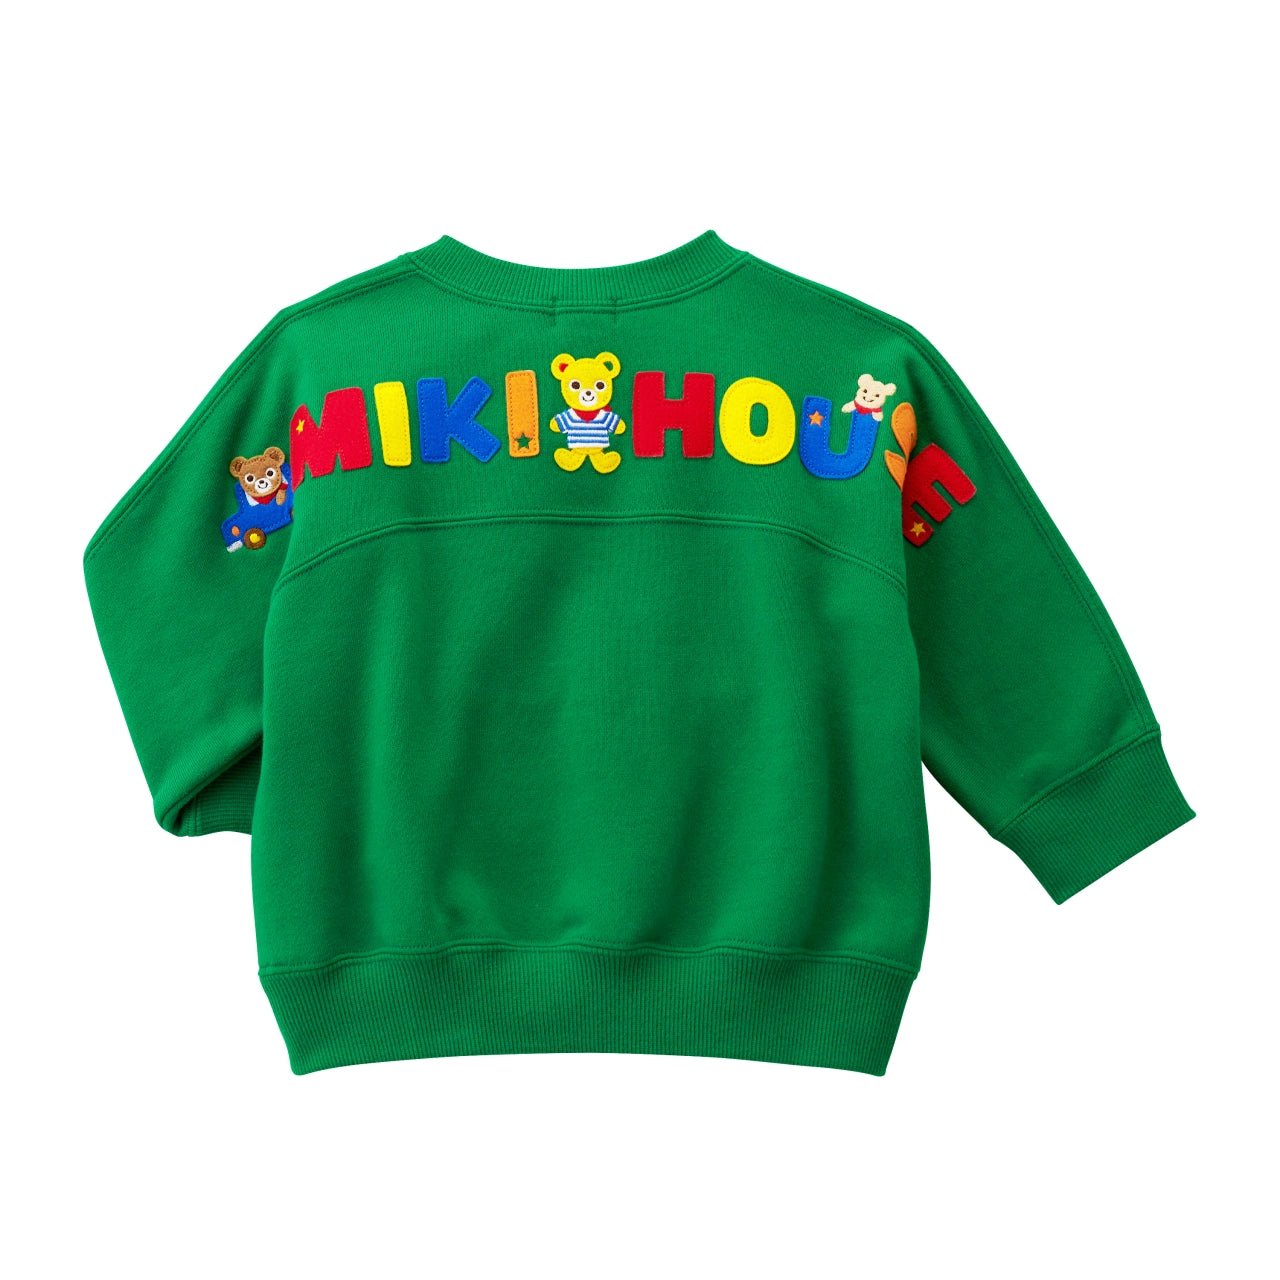 Kangaroo Pocket Sweatshirt - Pucchi - 13-5605-578-07-80